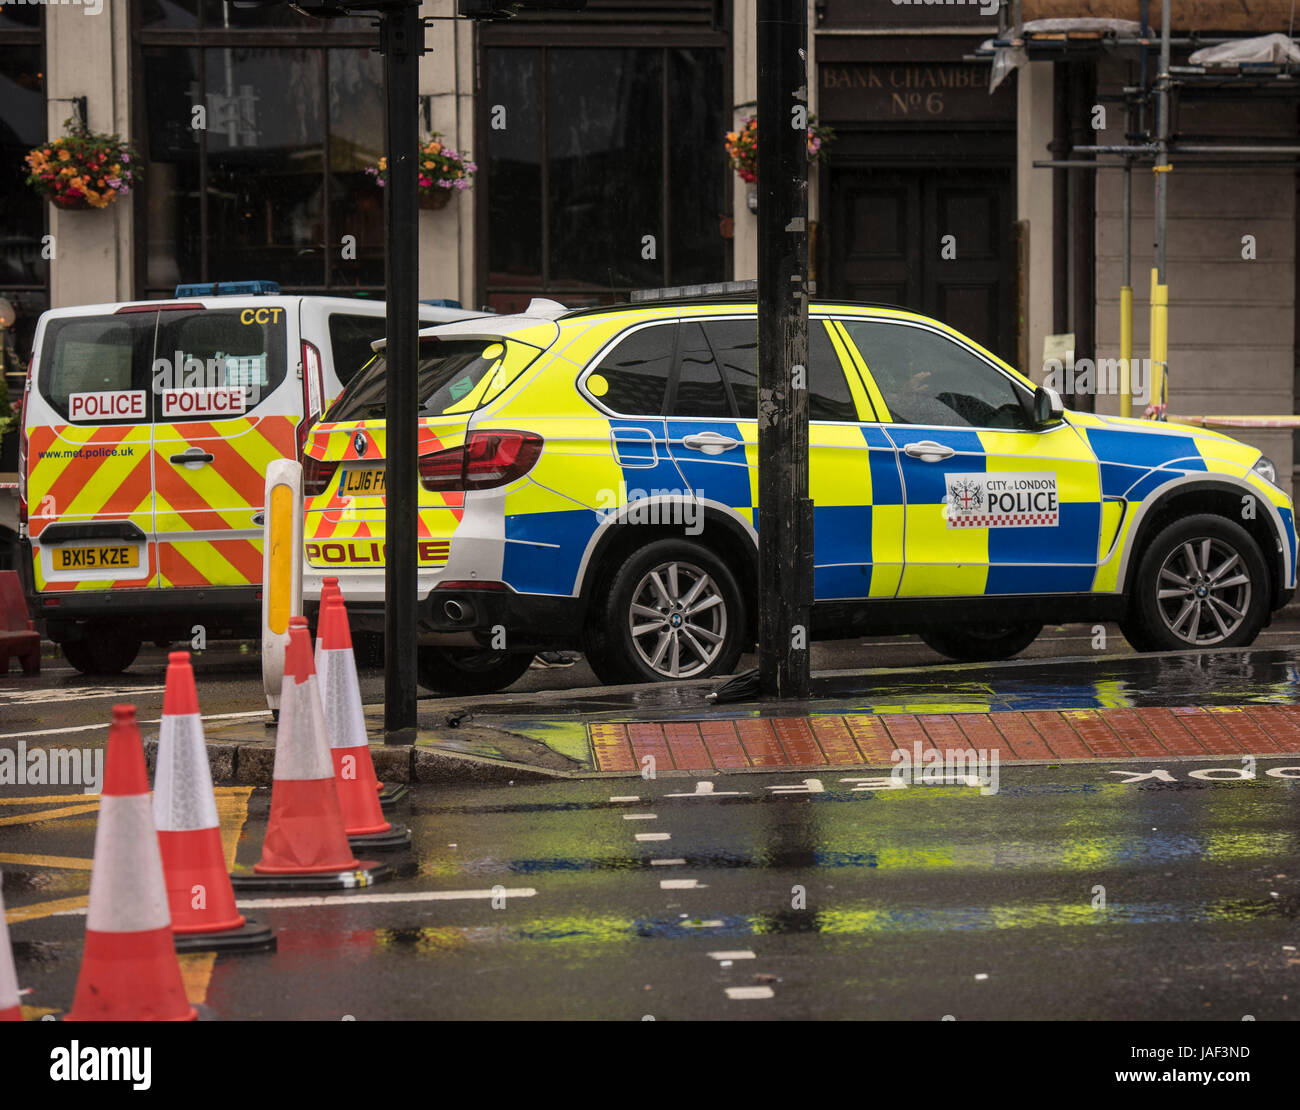 Londra, Regno Unito. Il 6 giugno, 2017. Cordoni di polizia rimangono in posto attorno al Ponte di Londra dopo gli attentati terroristici. Credito: Ian Davidson/Alamy Live News Foto Stock